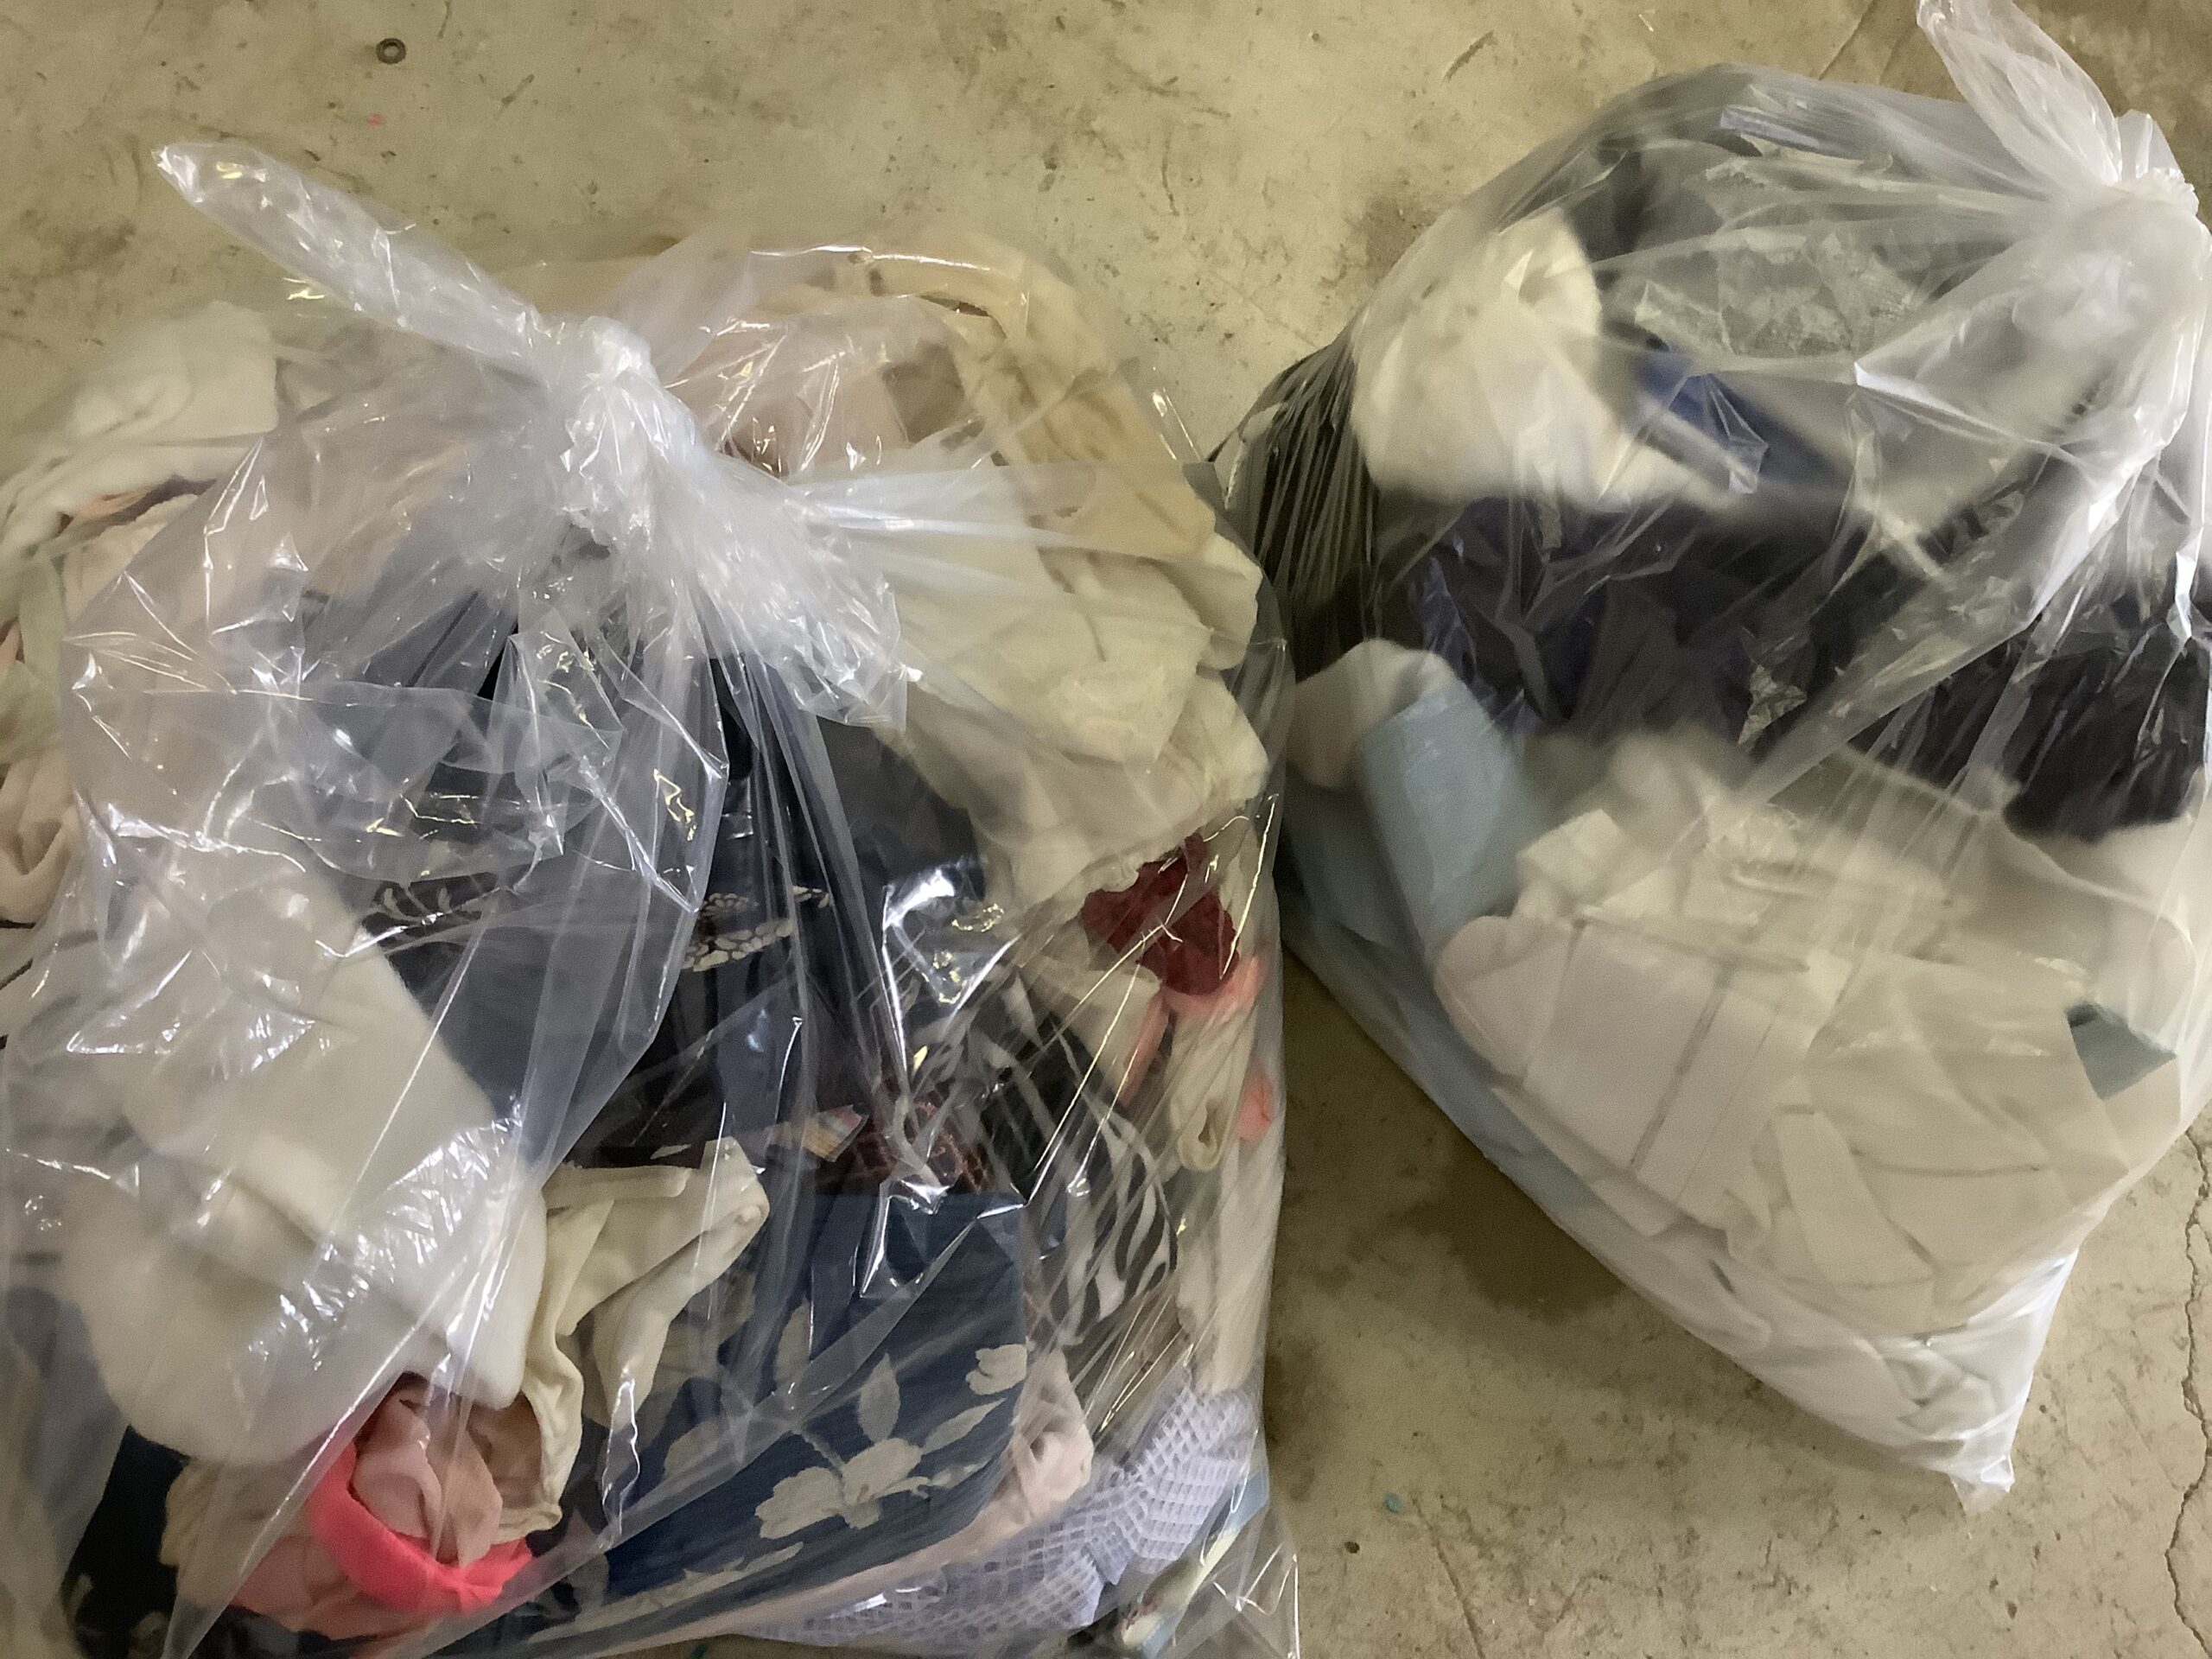 福山市曙町で回収した袋詰めした衣類